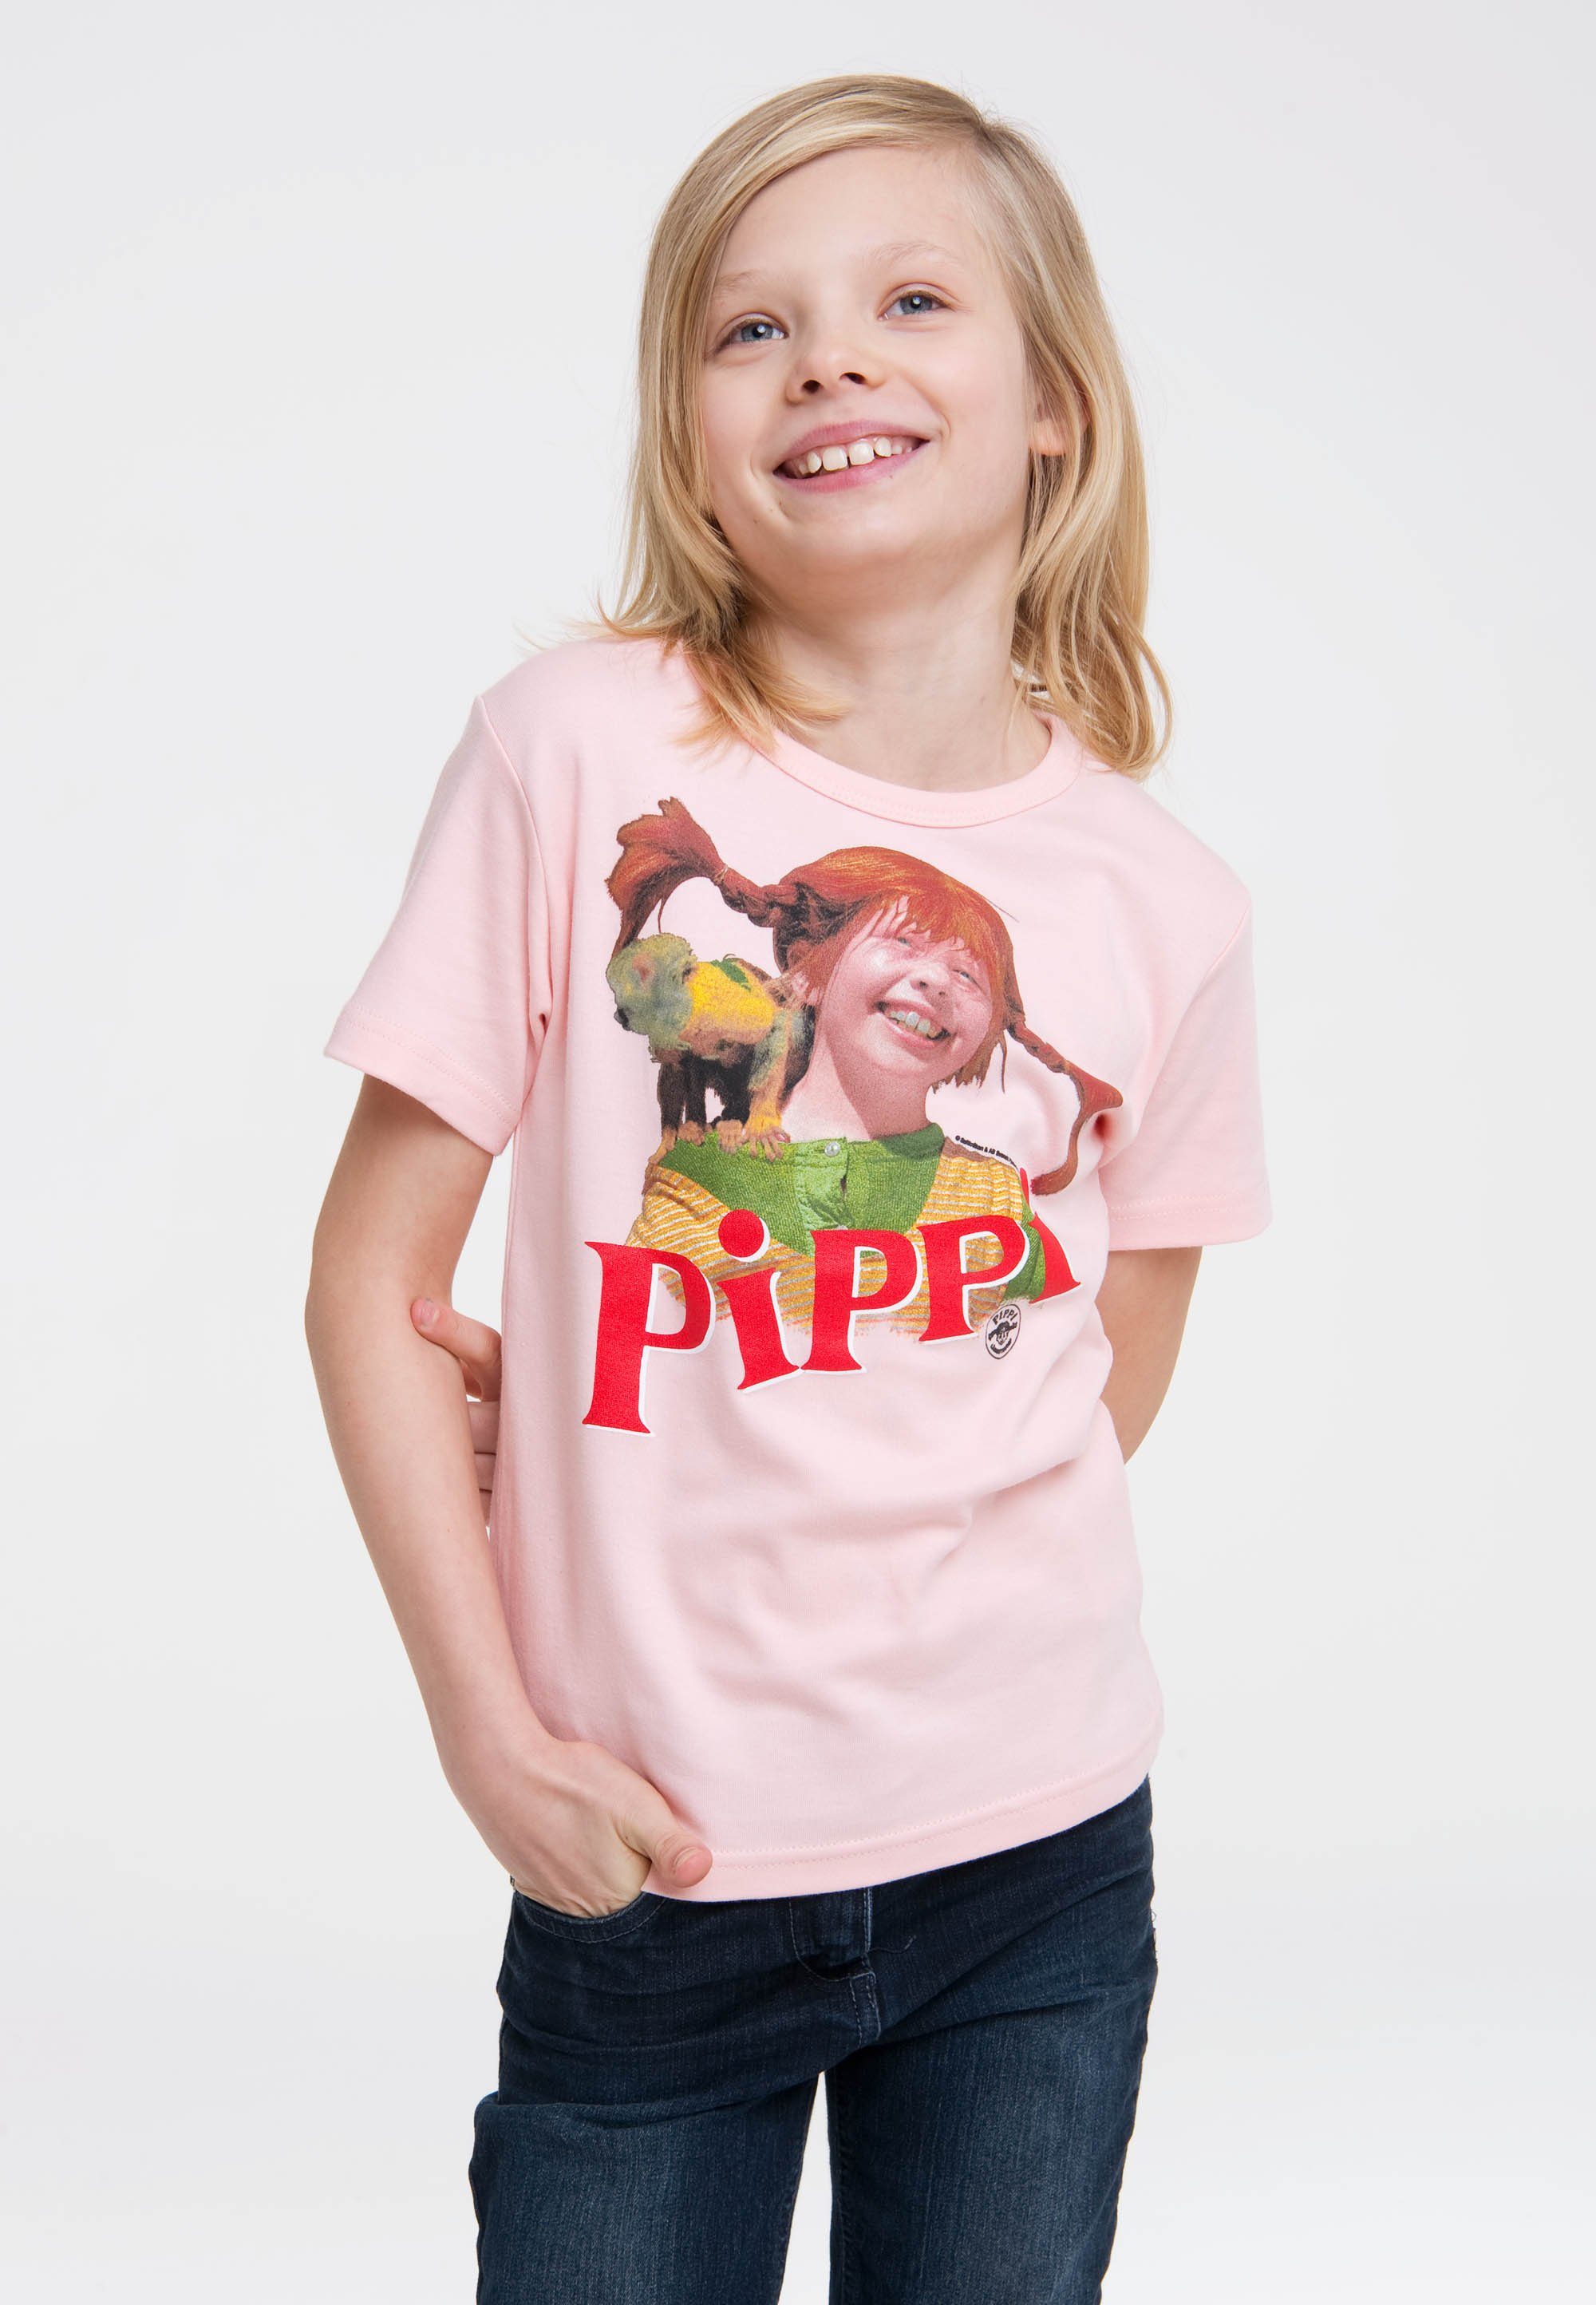 LOGOSHIRT T-Shirt Pippi Langstrumpf & Herr Nilsson mit Langstrumpf-Frontdruck rosa-rot